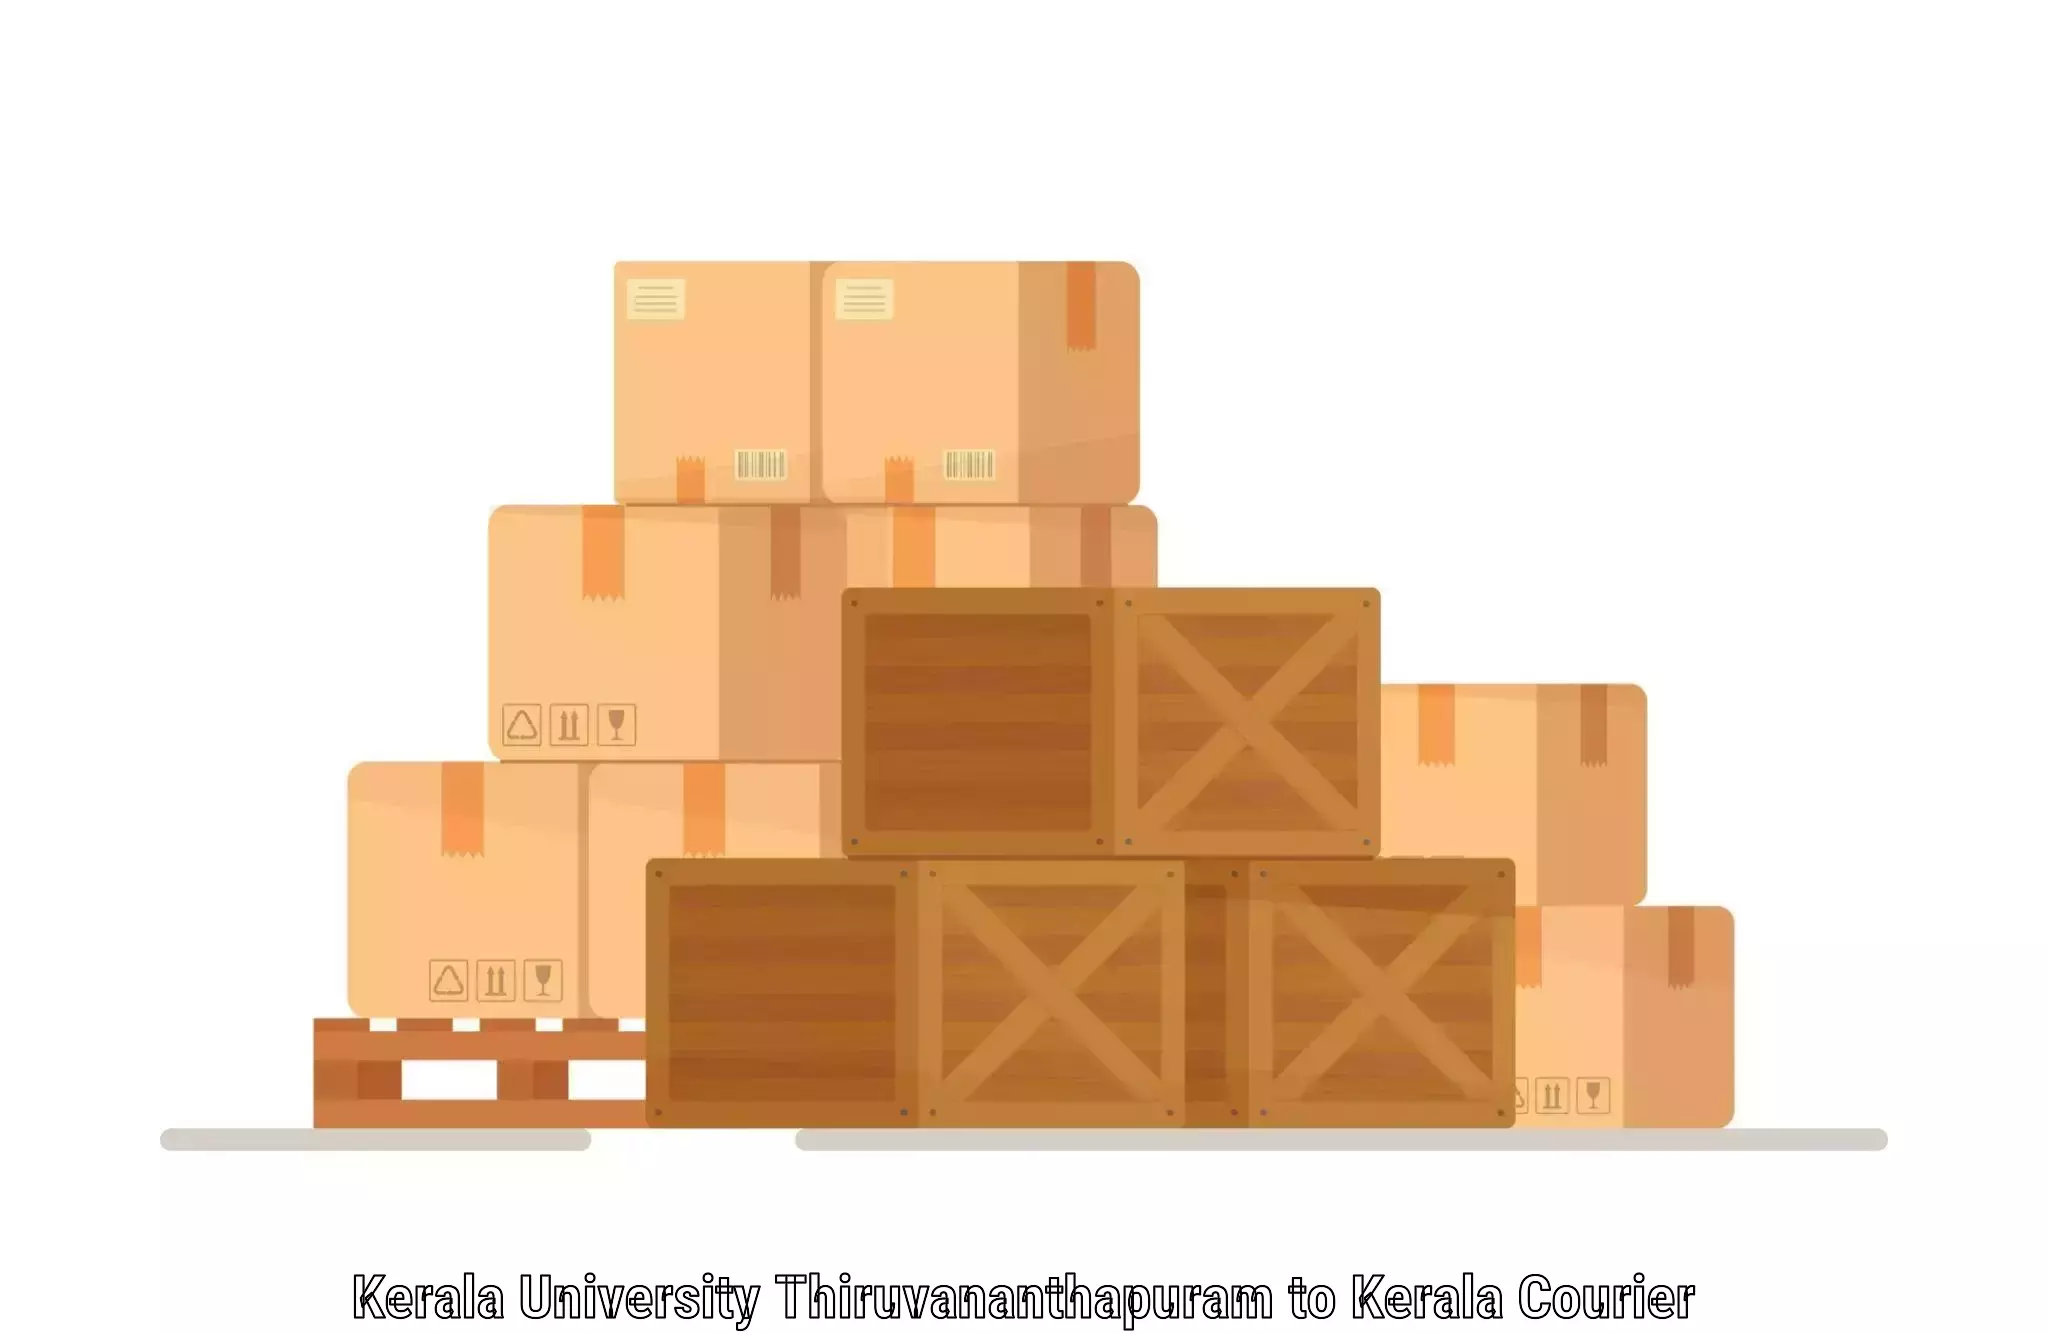 Express courier capabilities in Kerala University Thiruvananthapuram to Kalpetta